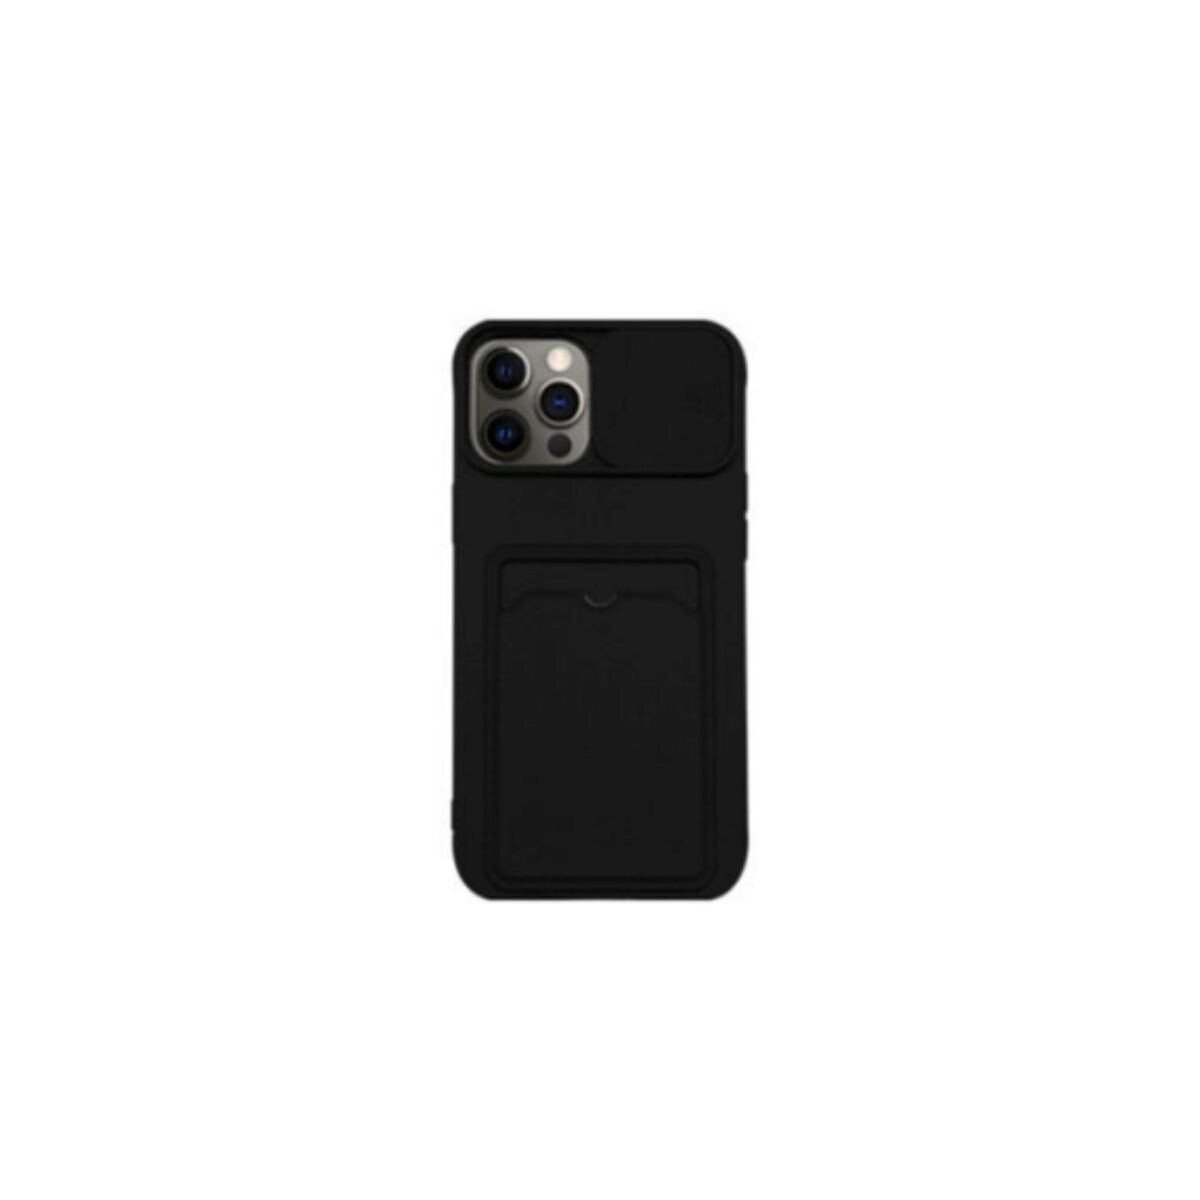 Protector cubre cámara para Iphone 11 negro 